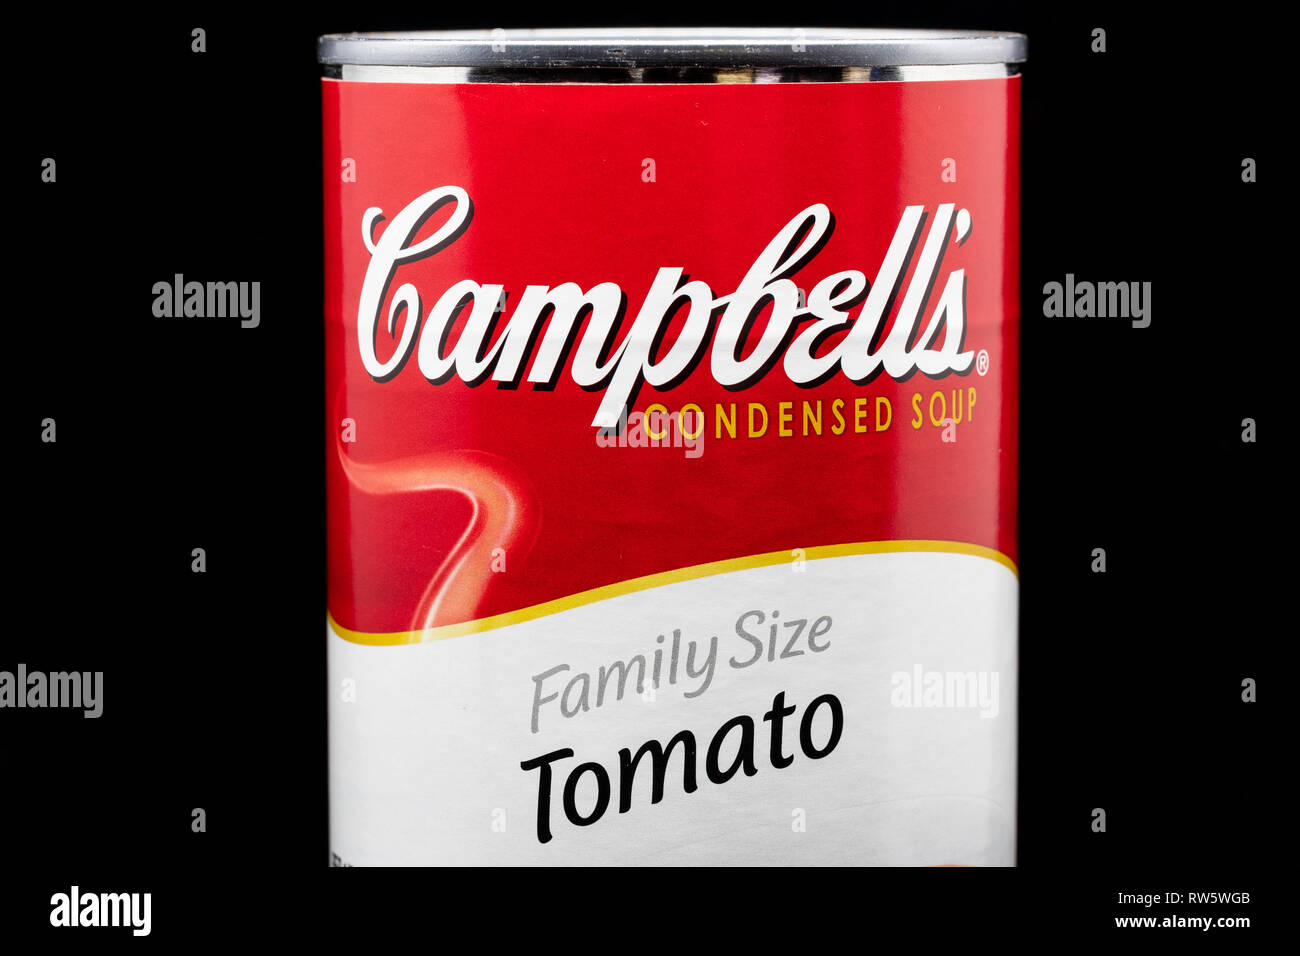 ST. PAUL, MN/USA - März 4, 2019: Campbell's Tomato Soup und Logo. Campbell ist ein US-amerikanischer Hersteller von Konserven Suppen und verwandte Produkte. Stockfoto